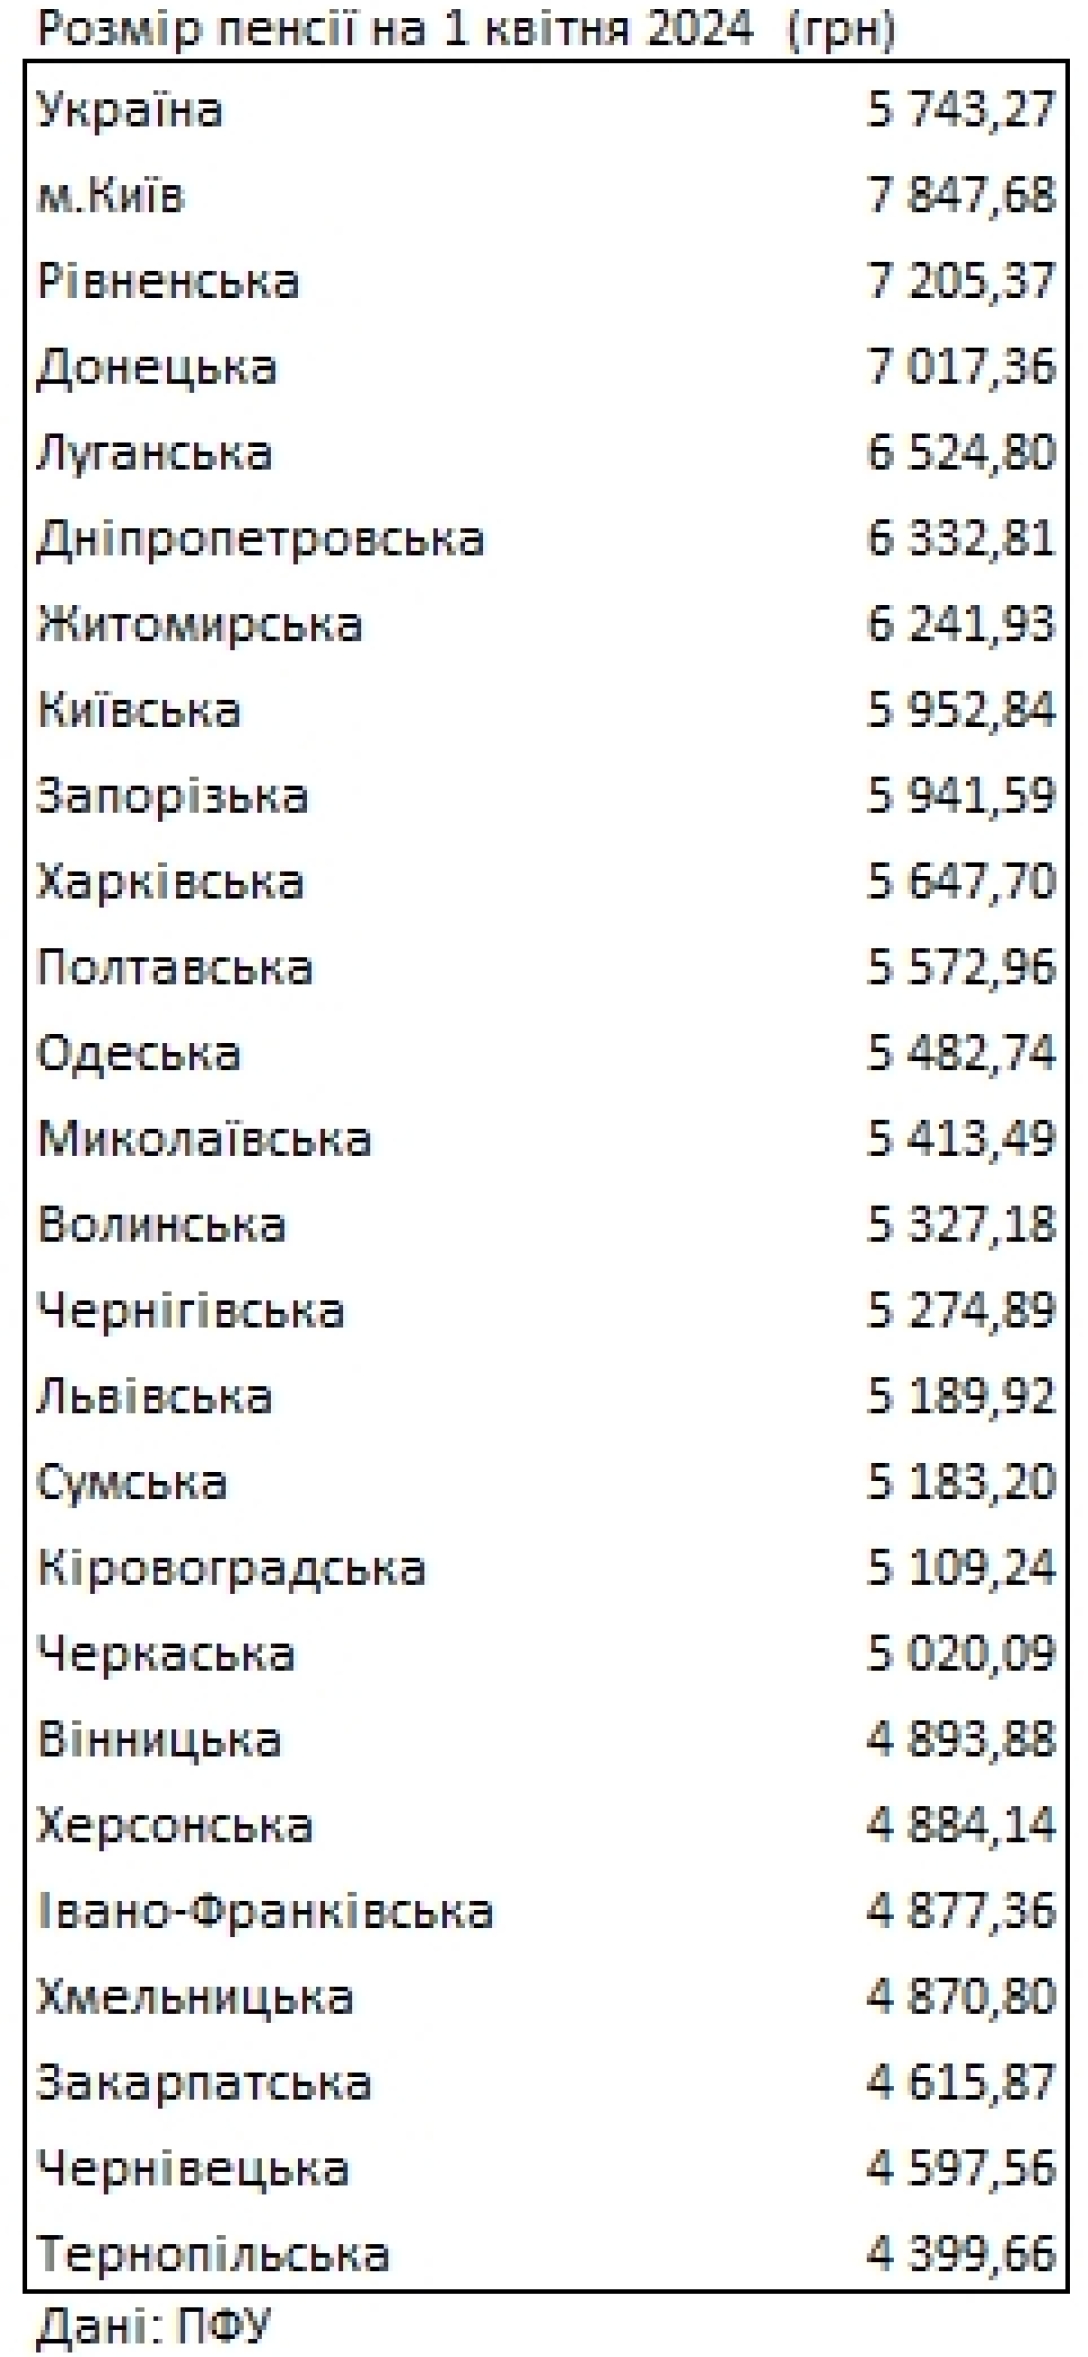 Размеры пенсий в разных областях Украины